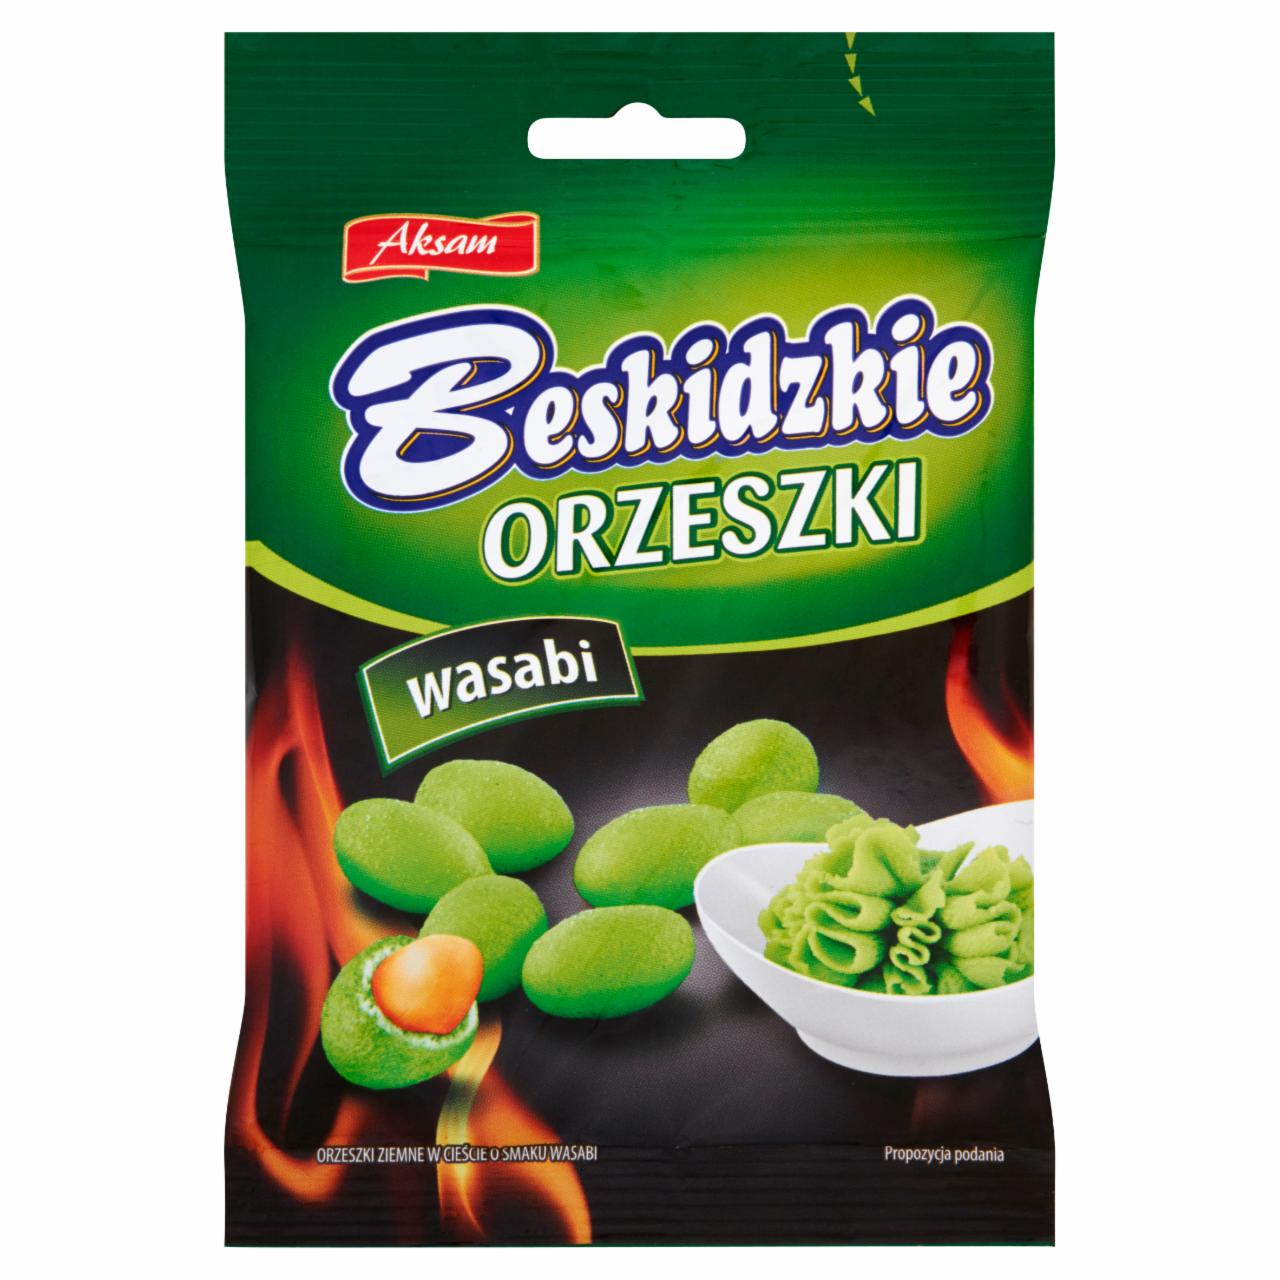 Zdjęcia - Aksam Beskidzkie Orzeszki wasabi 70 g